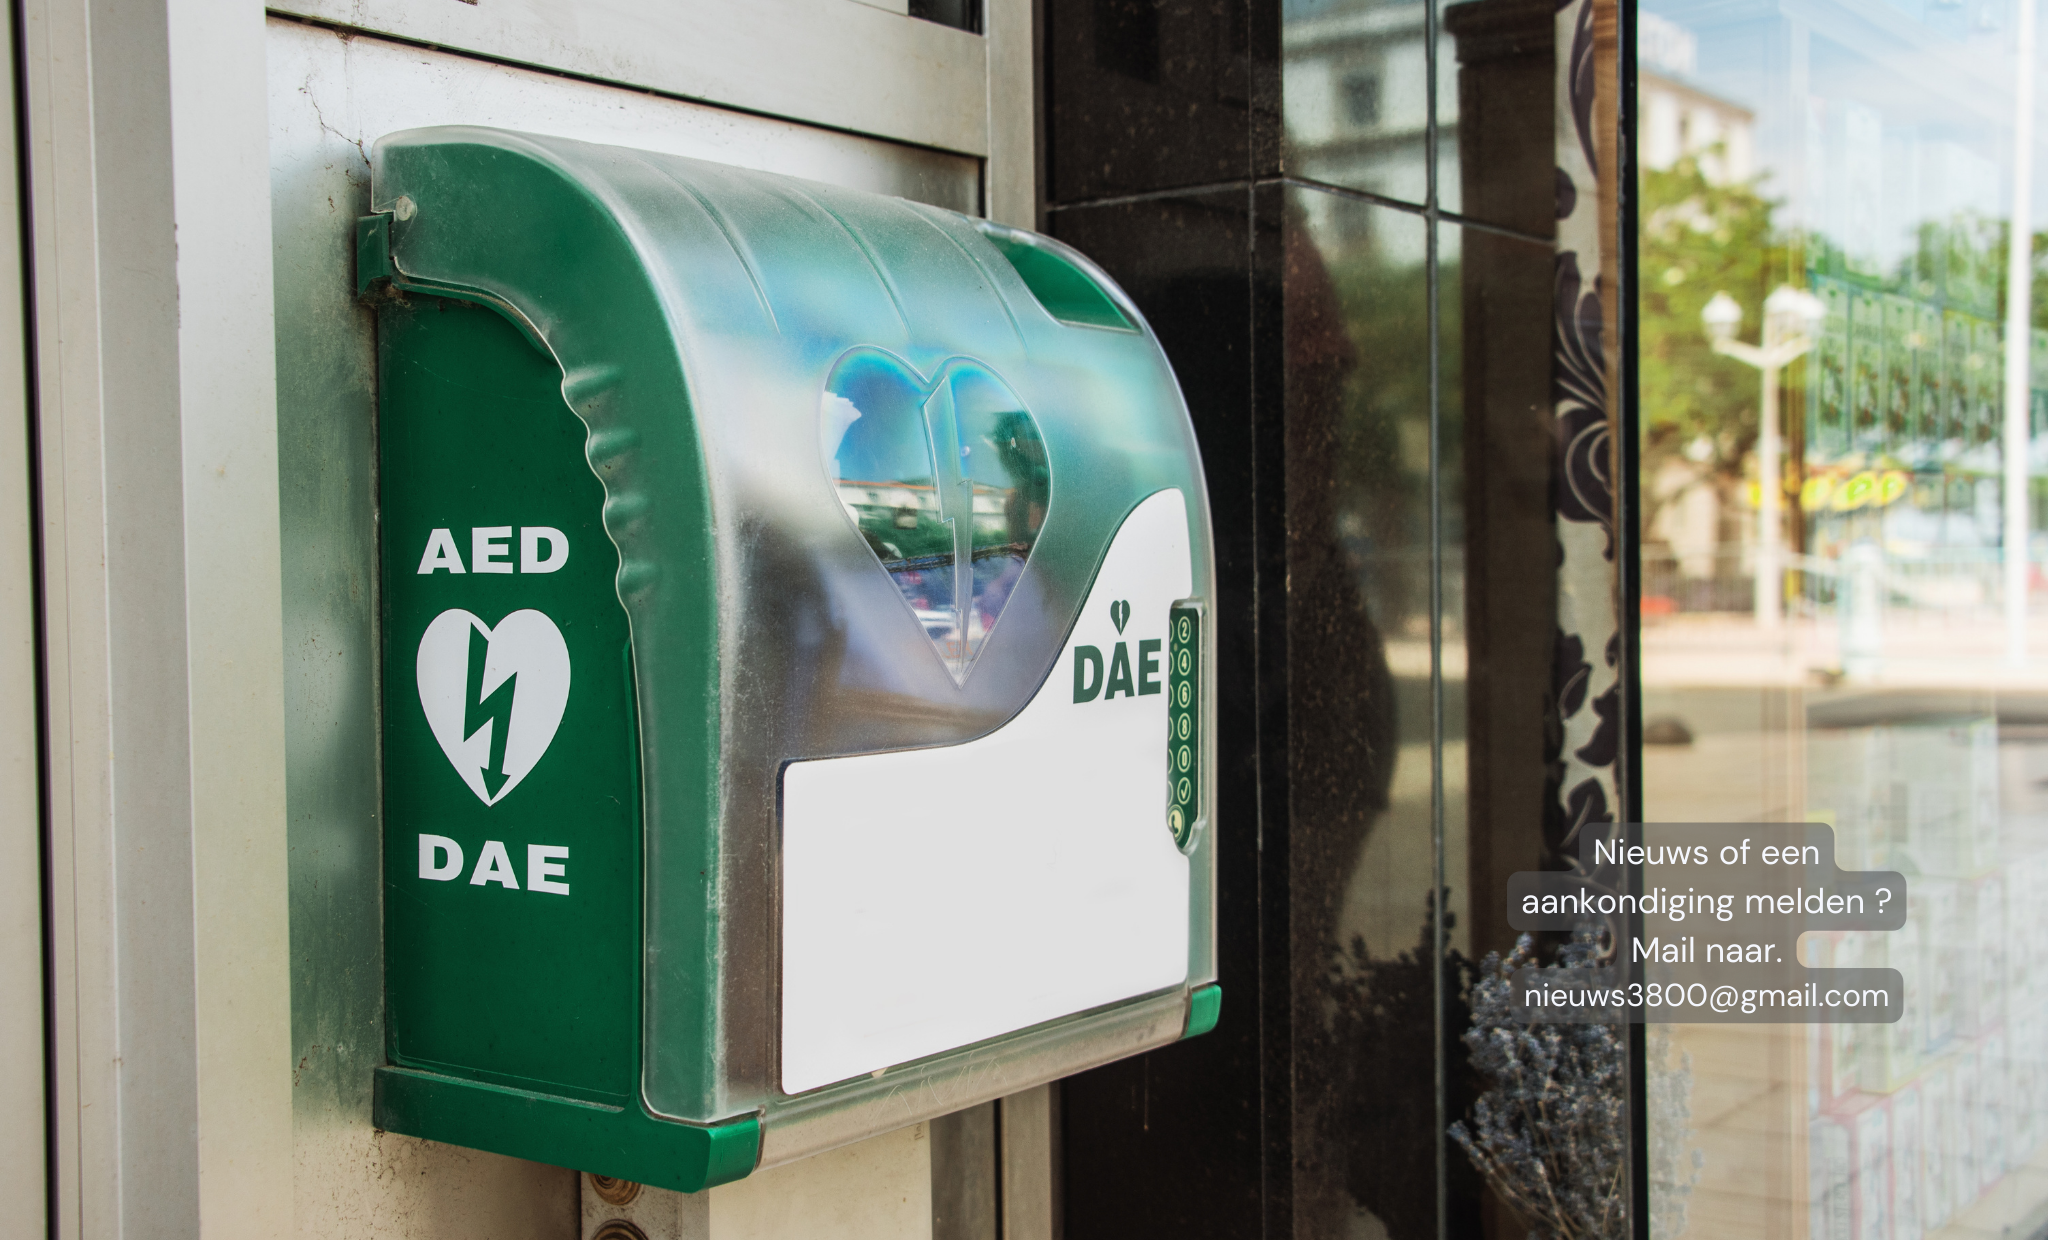 Stad Sint-Truiden biedt een gratis opleiding reanimeren (REA) met de Automatische Externe Defibrillator (AED) aan voor alle inwoners van Sint-Truiden.